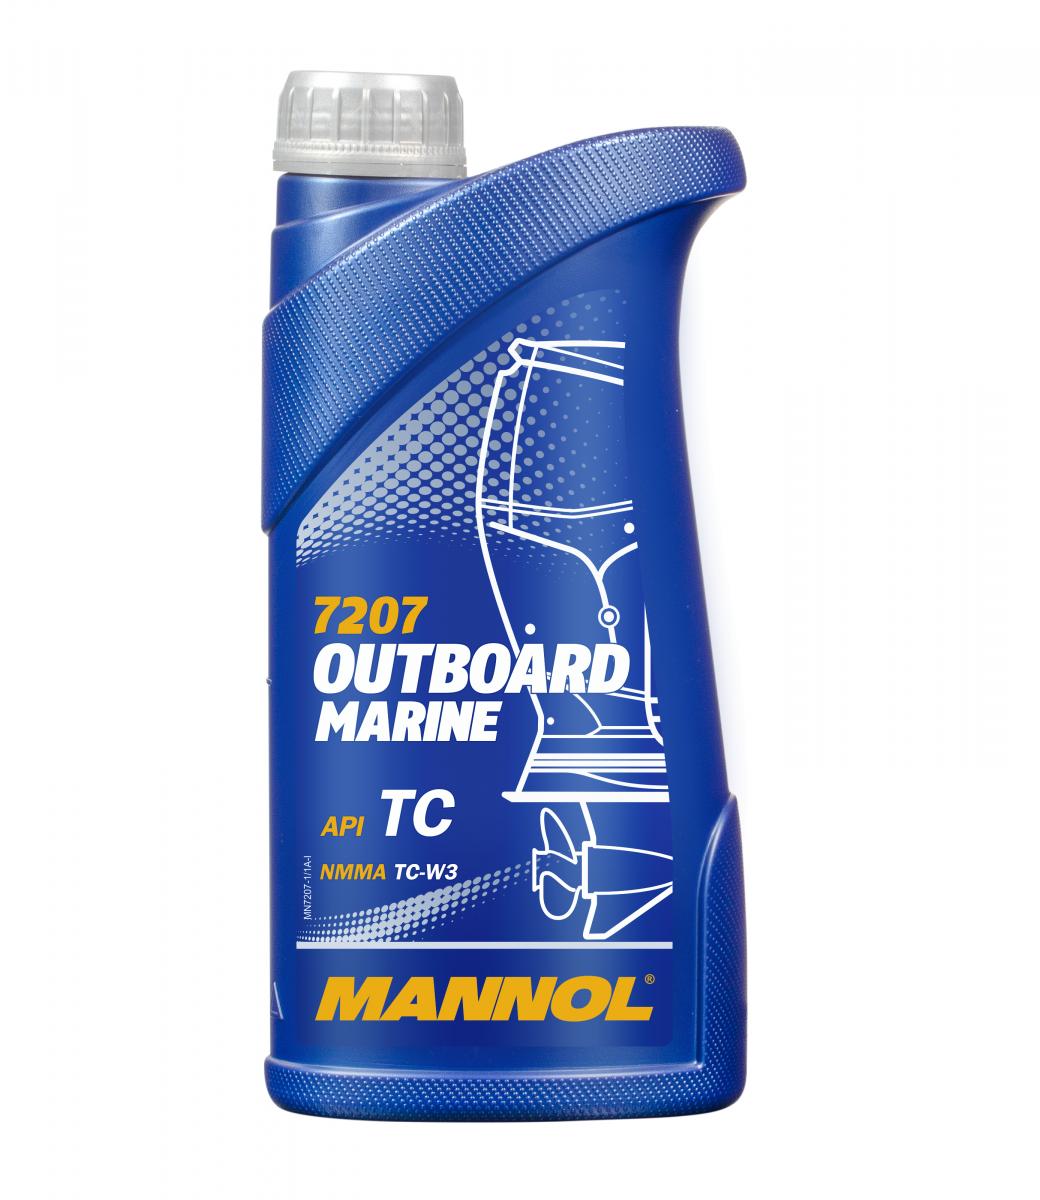 MANNOL Outboard Marine 7207 1л масло на синтетической основе для двухтактных подвесных лодочных моторов